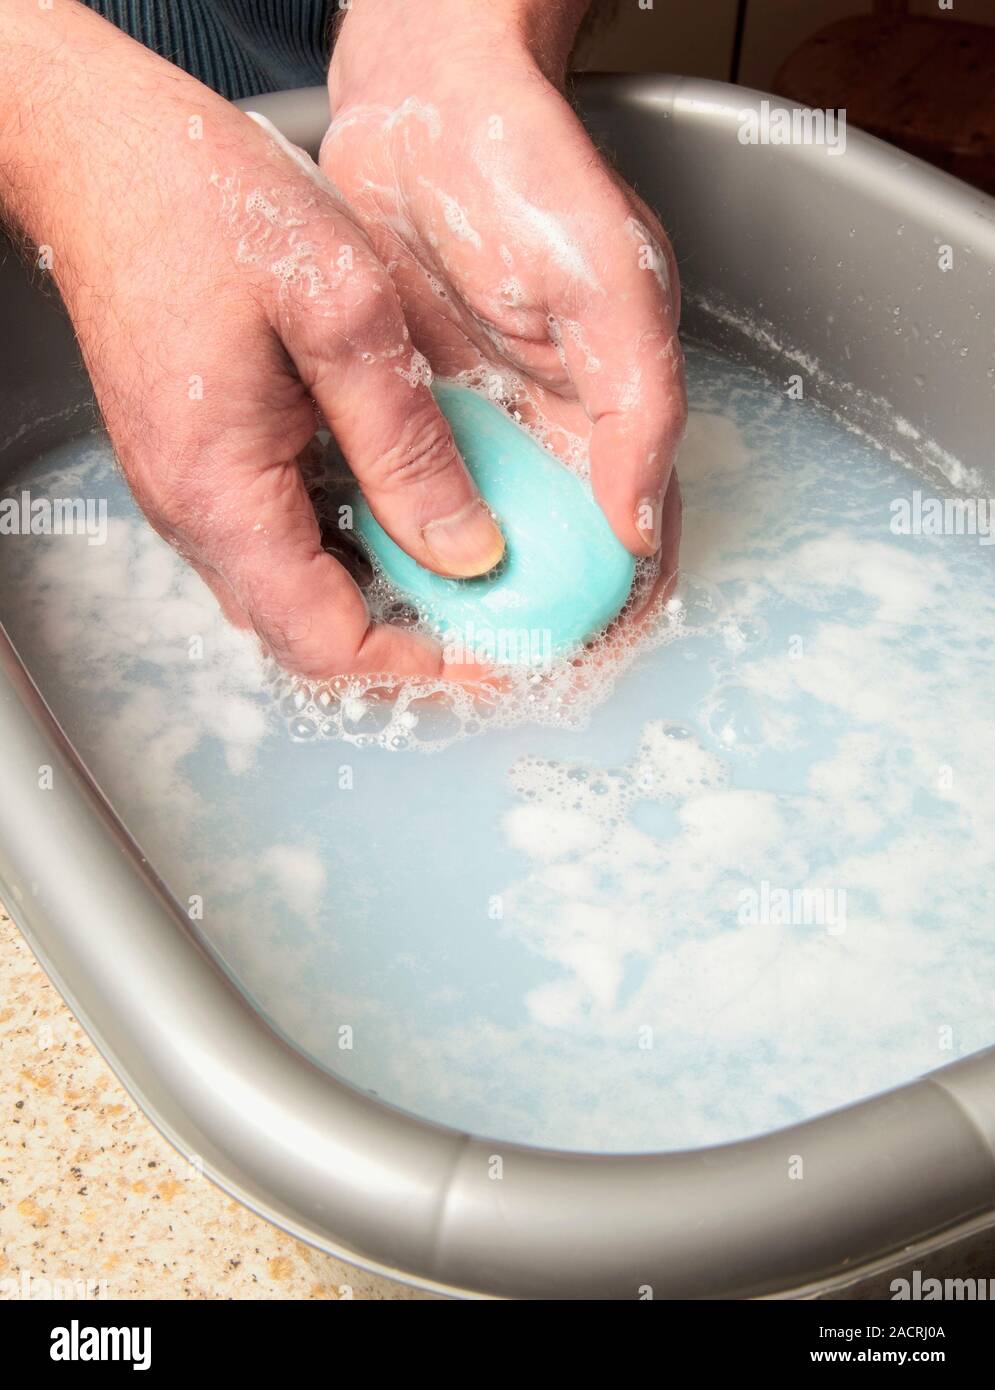 Указать на что влияет жесткая вода мыло. Растворить мыло в воде. Мыльная вода. Мыло в жесткой воде. Растворение мыла в воде.